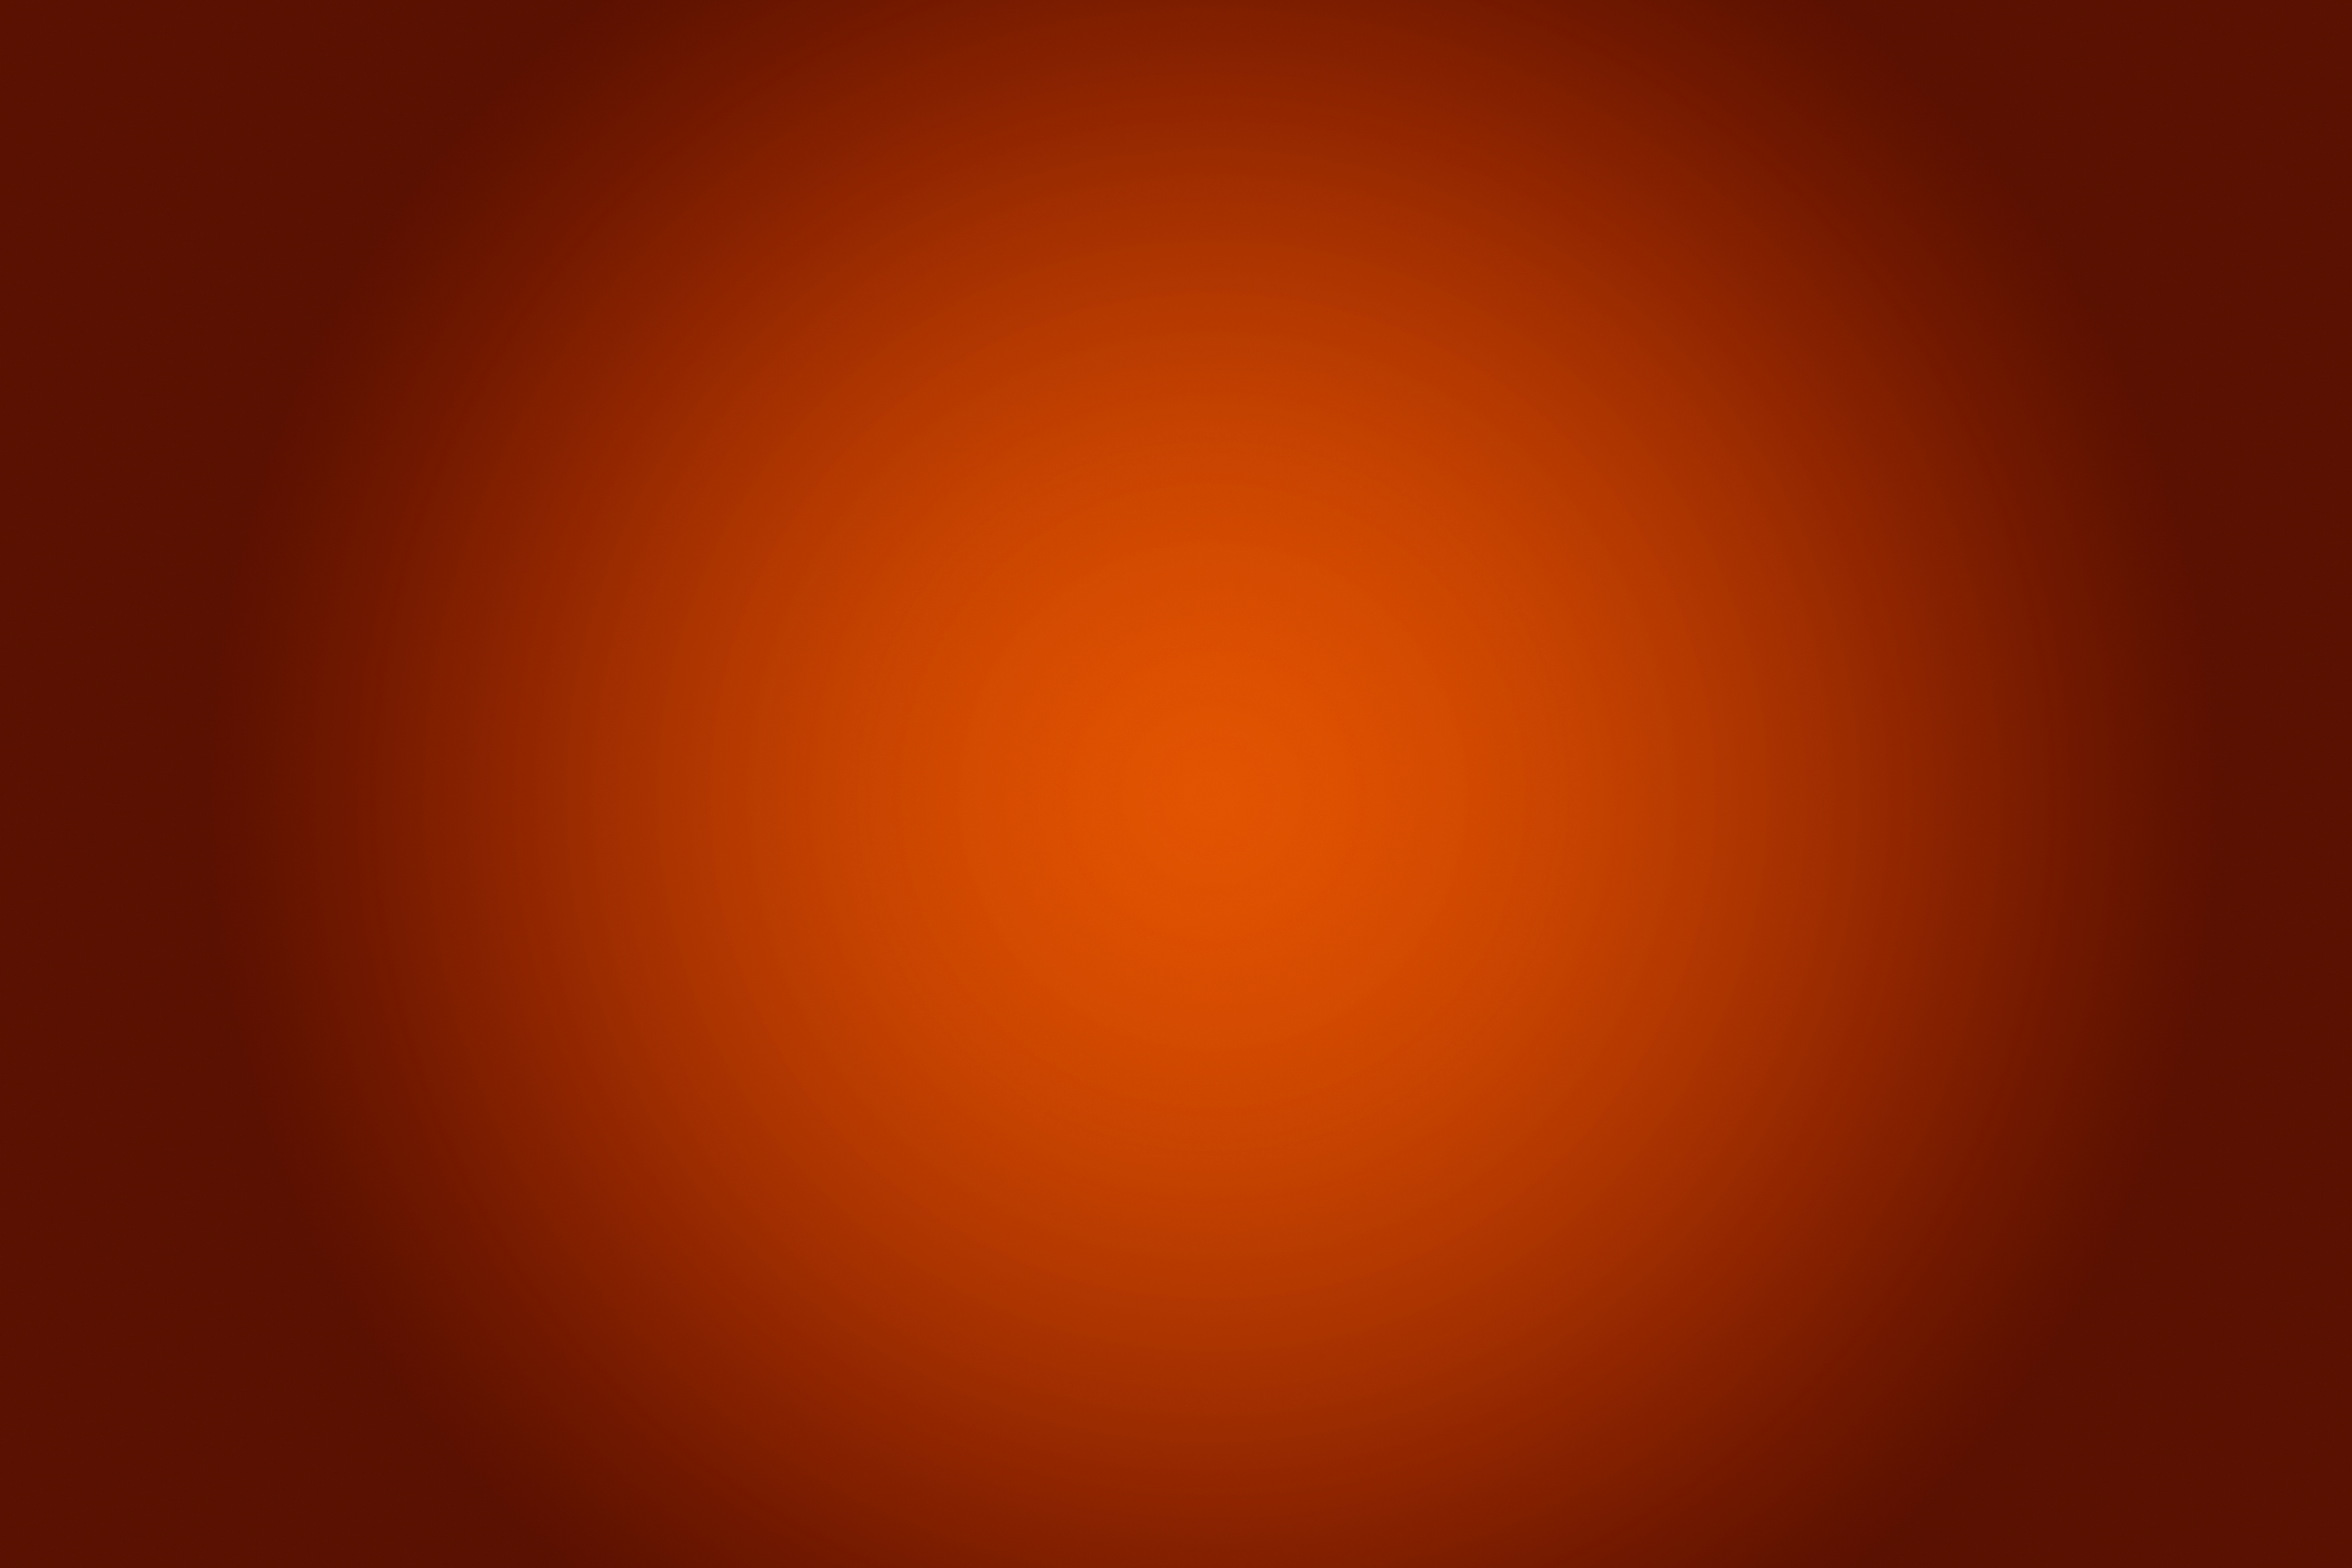 Orange gradient background.